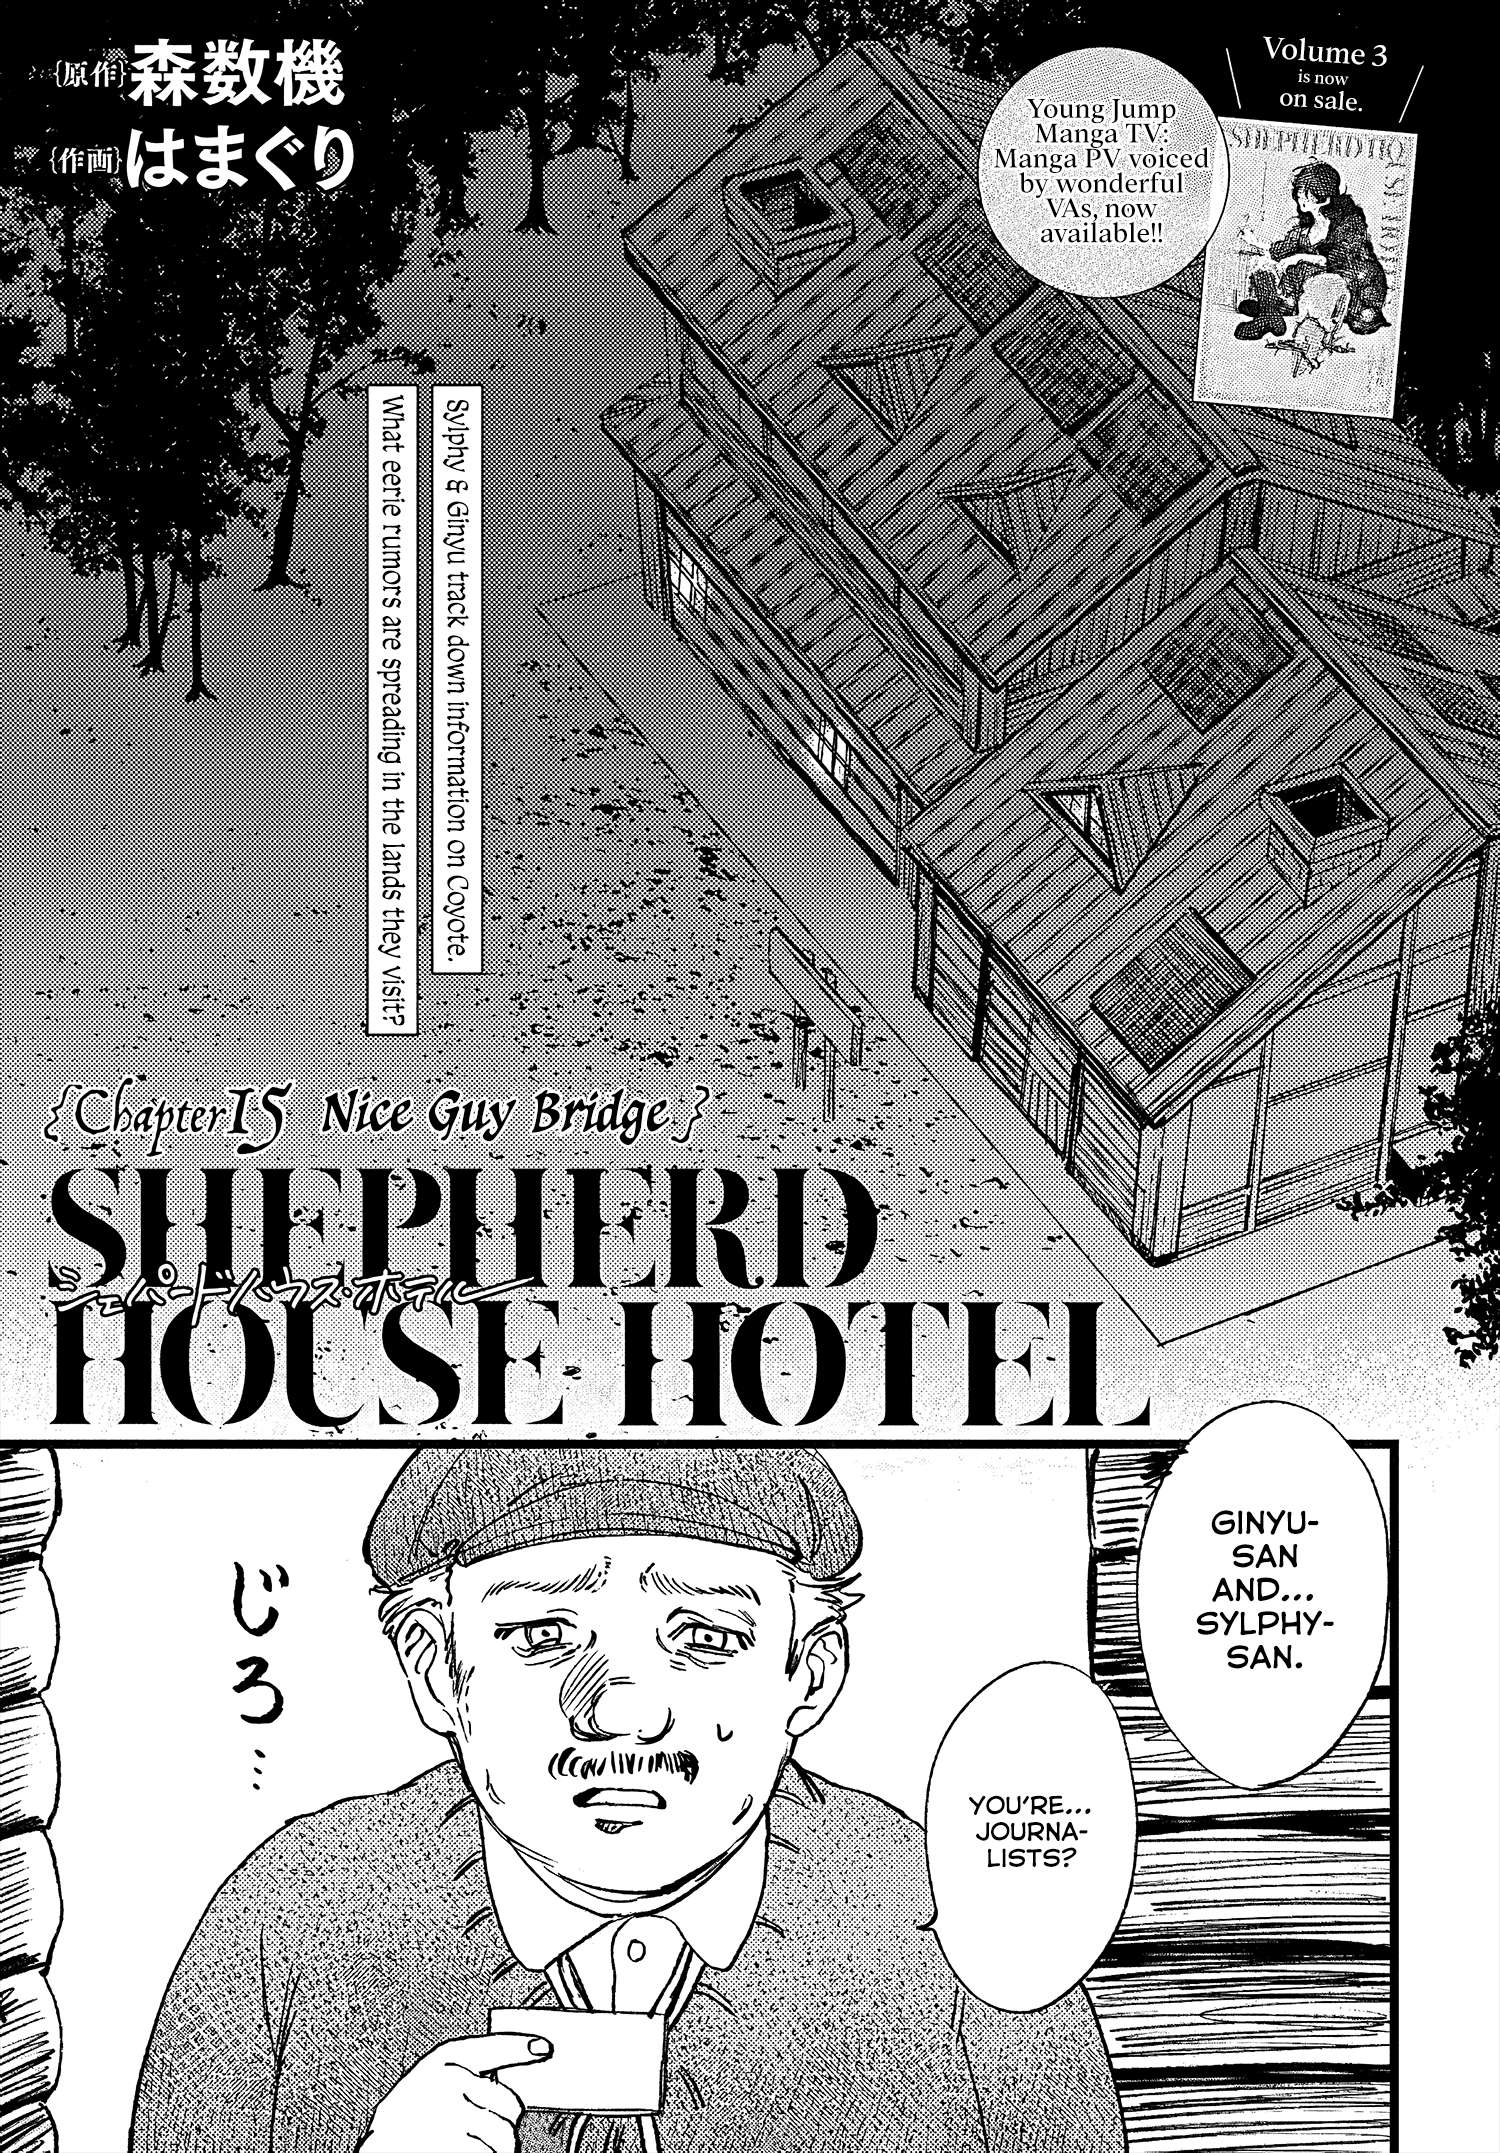 Shepherd House Hotel - chapter 15 - #6